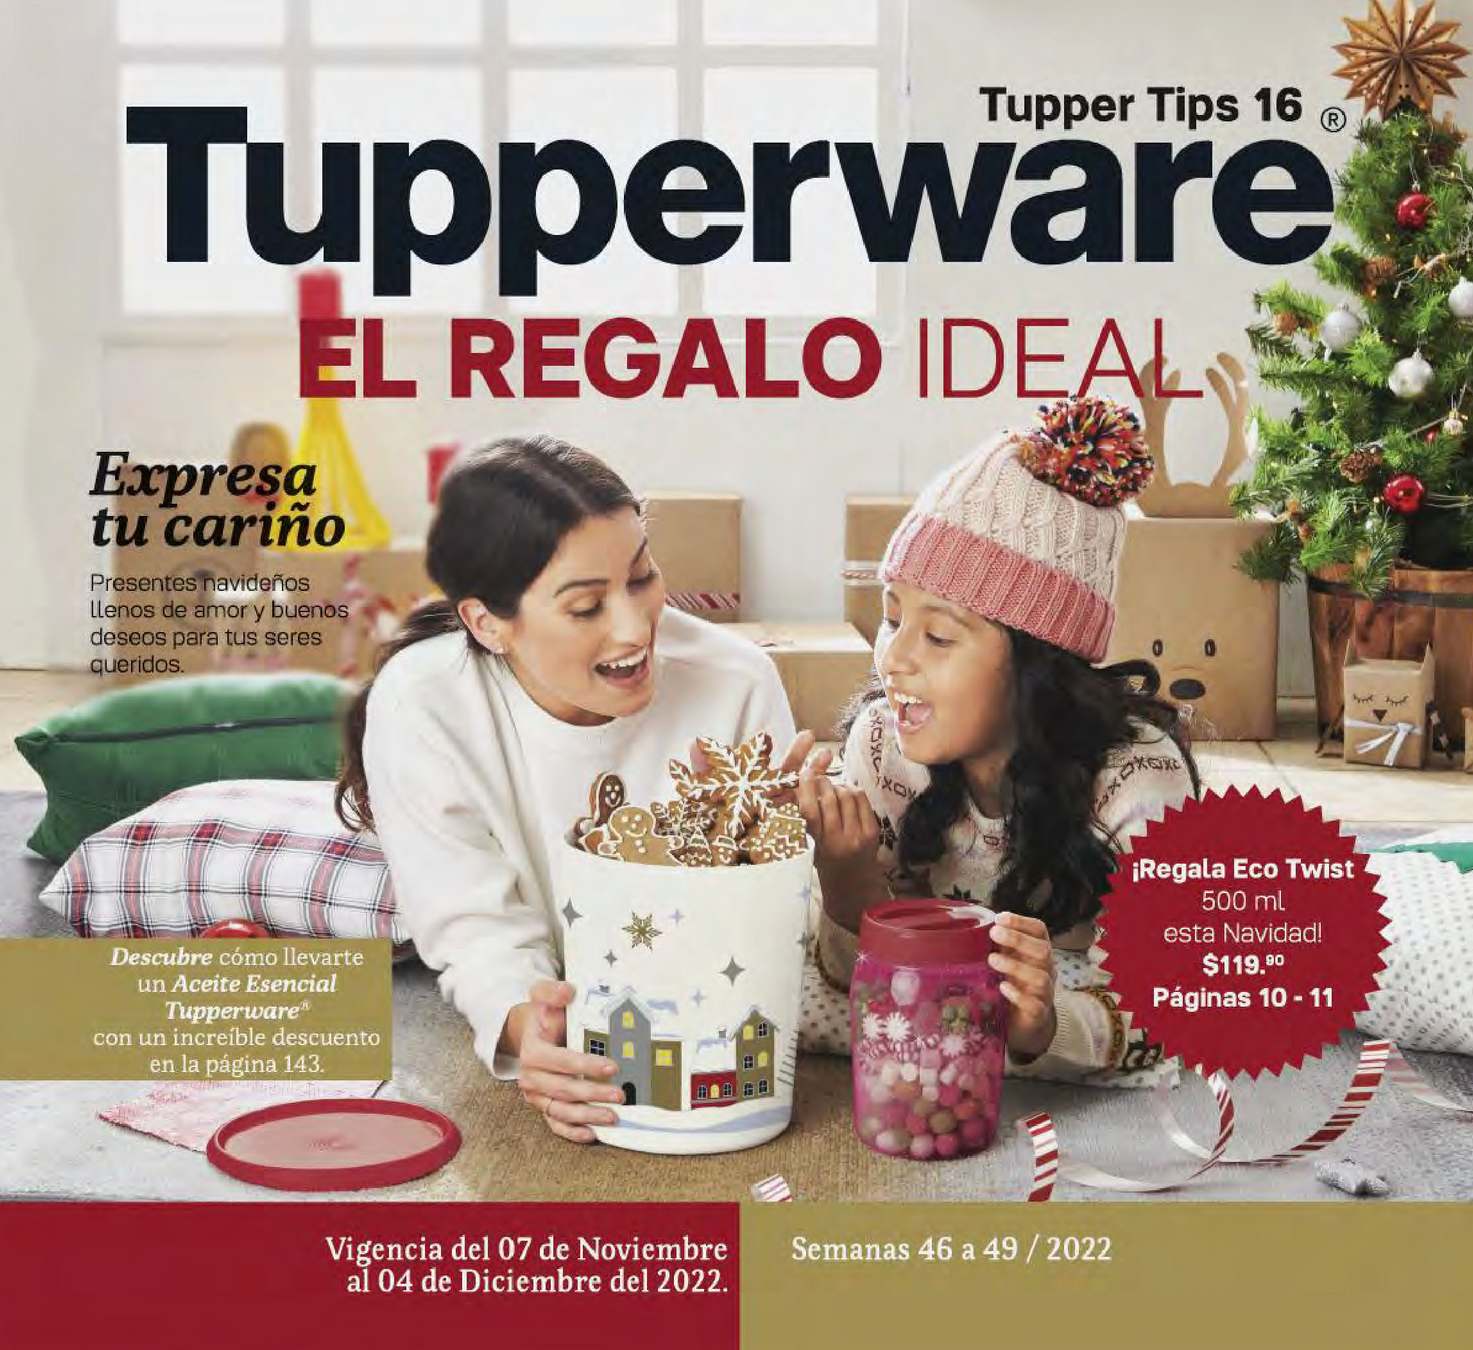 Catálogo Tupperware Tupper Tips 16 2022 México